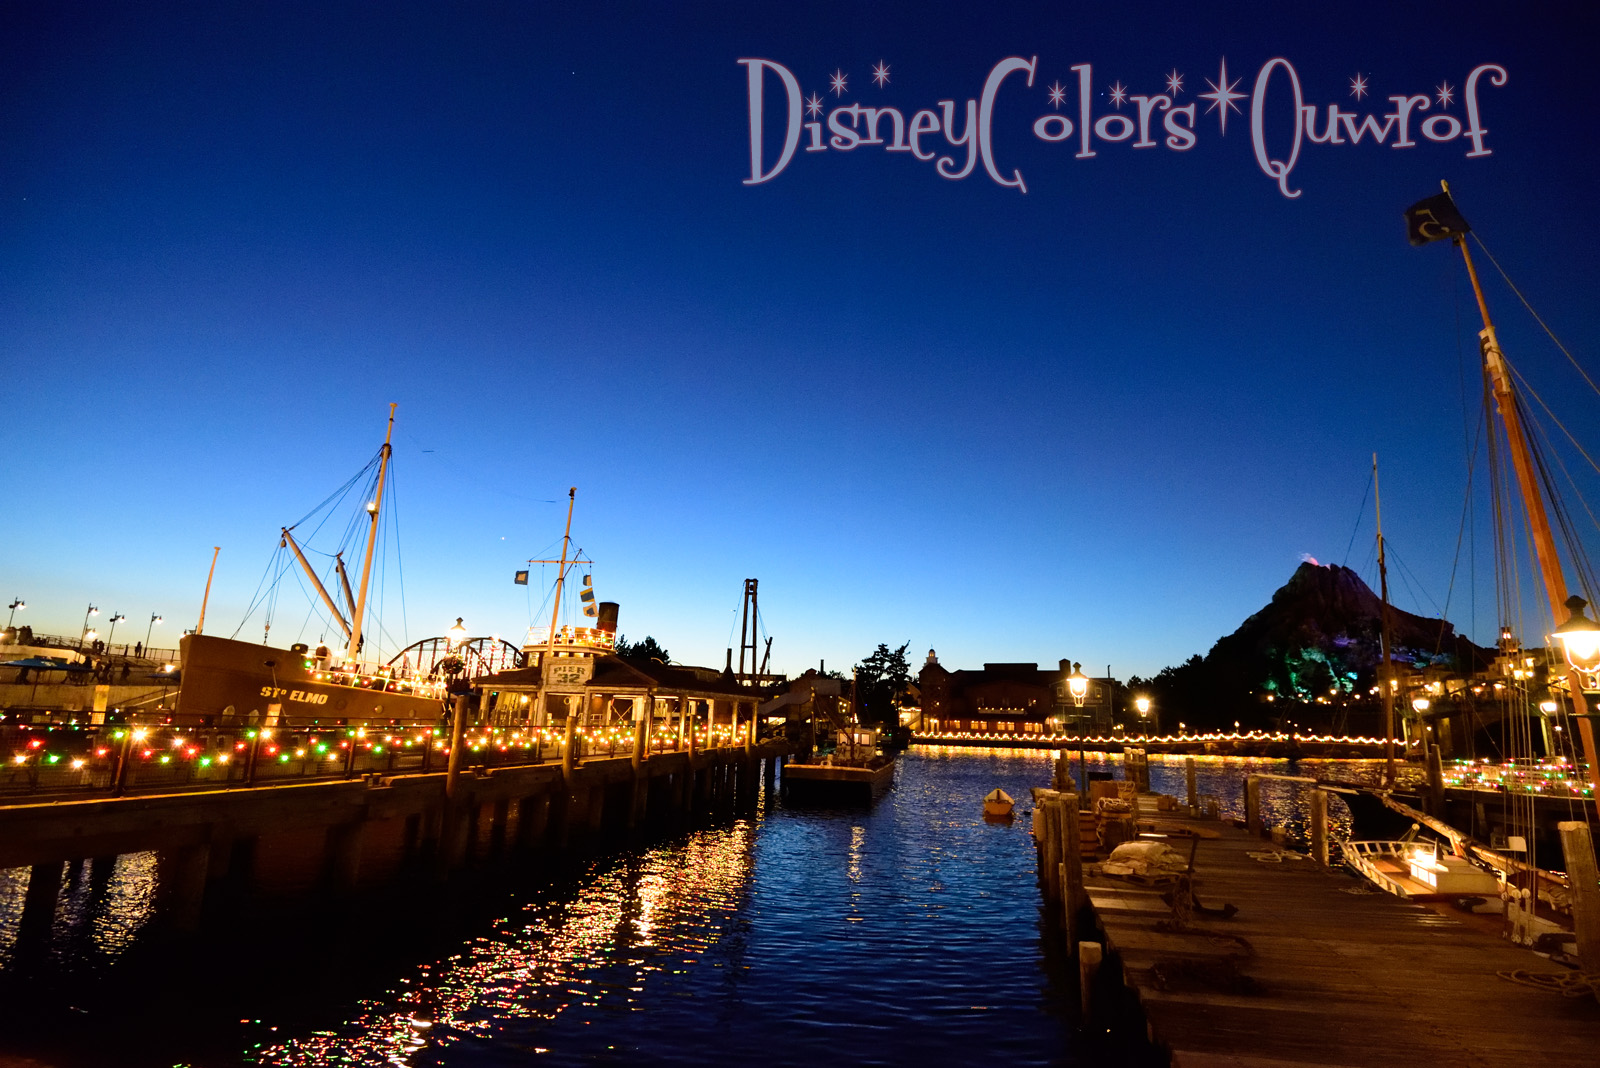 極寒の連続ショー待ち 14年12月9日 東京ディズニーシーのインレポ Disney Colors Blog